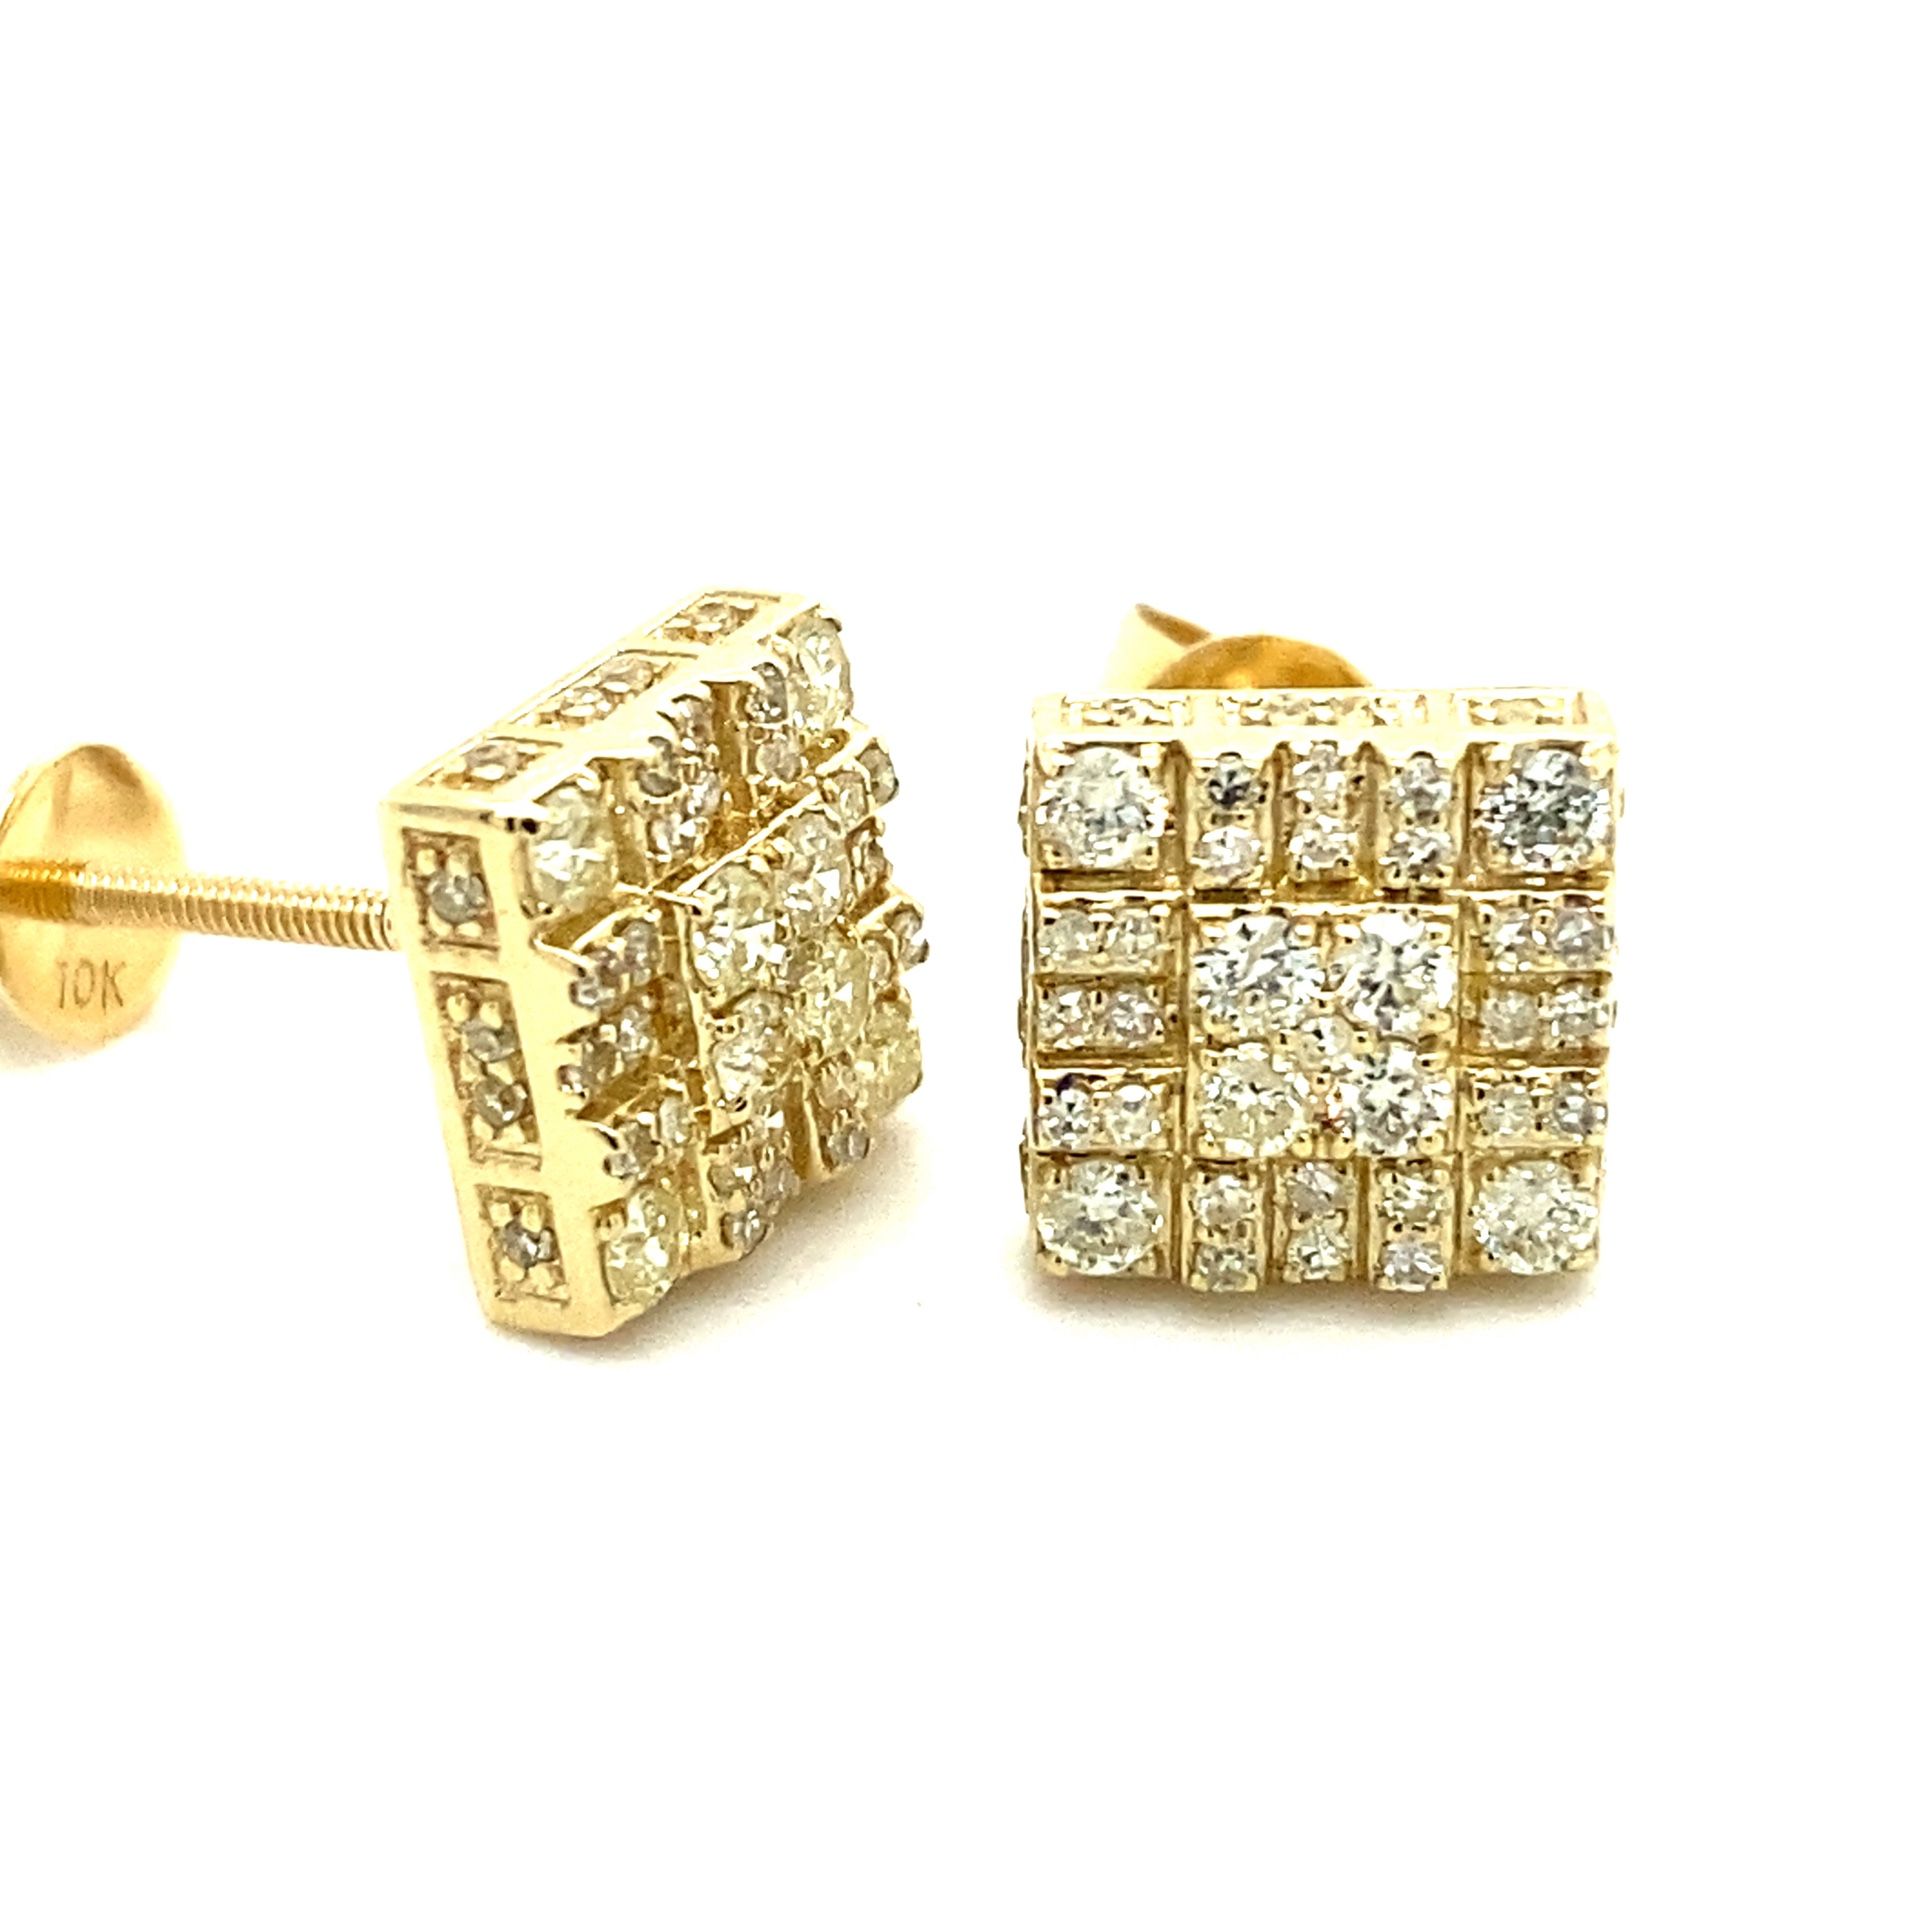 10k Gold Diamond Cluster Earrings .5ctw 133621 1